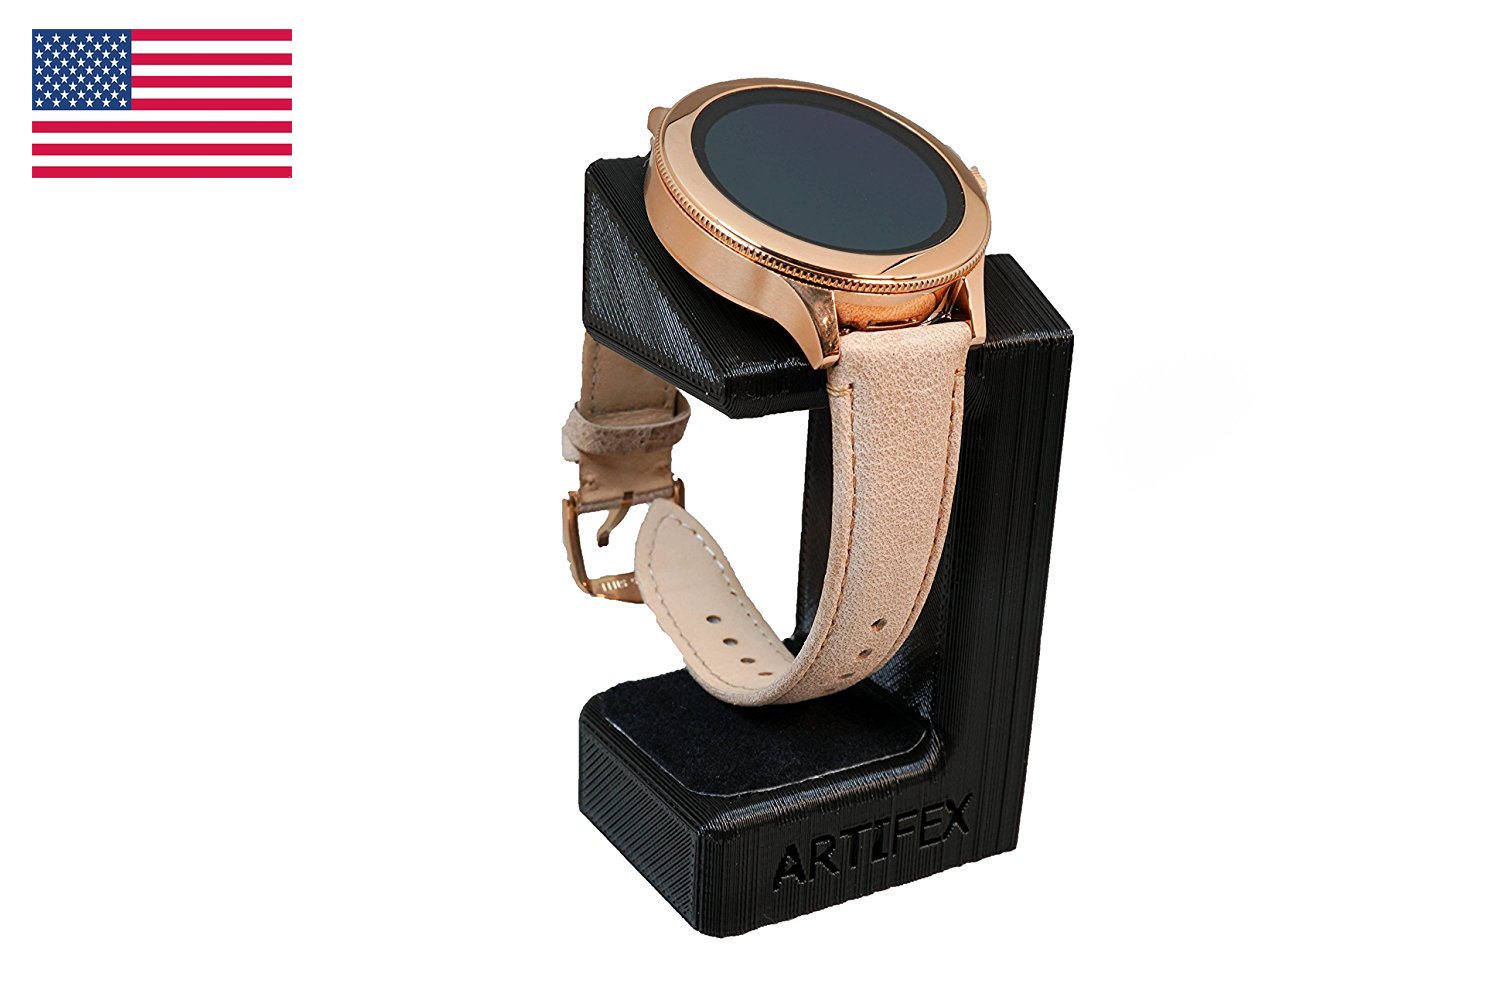 Fossil Q Marshal/ Gen3 / MK Bradshaw/ Skagen/ Emporio Armani/ Diesel/ Smartwatch by Artifex Design (Wireless charger) - Artifex Design 3D